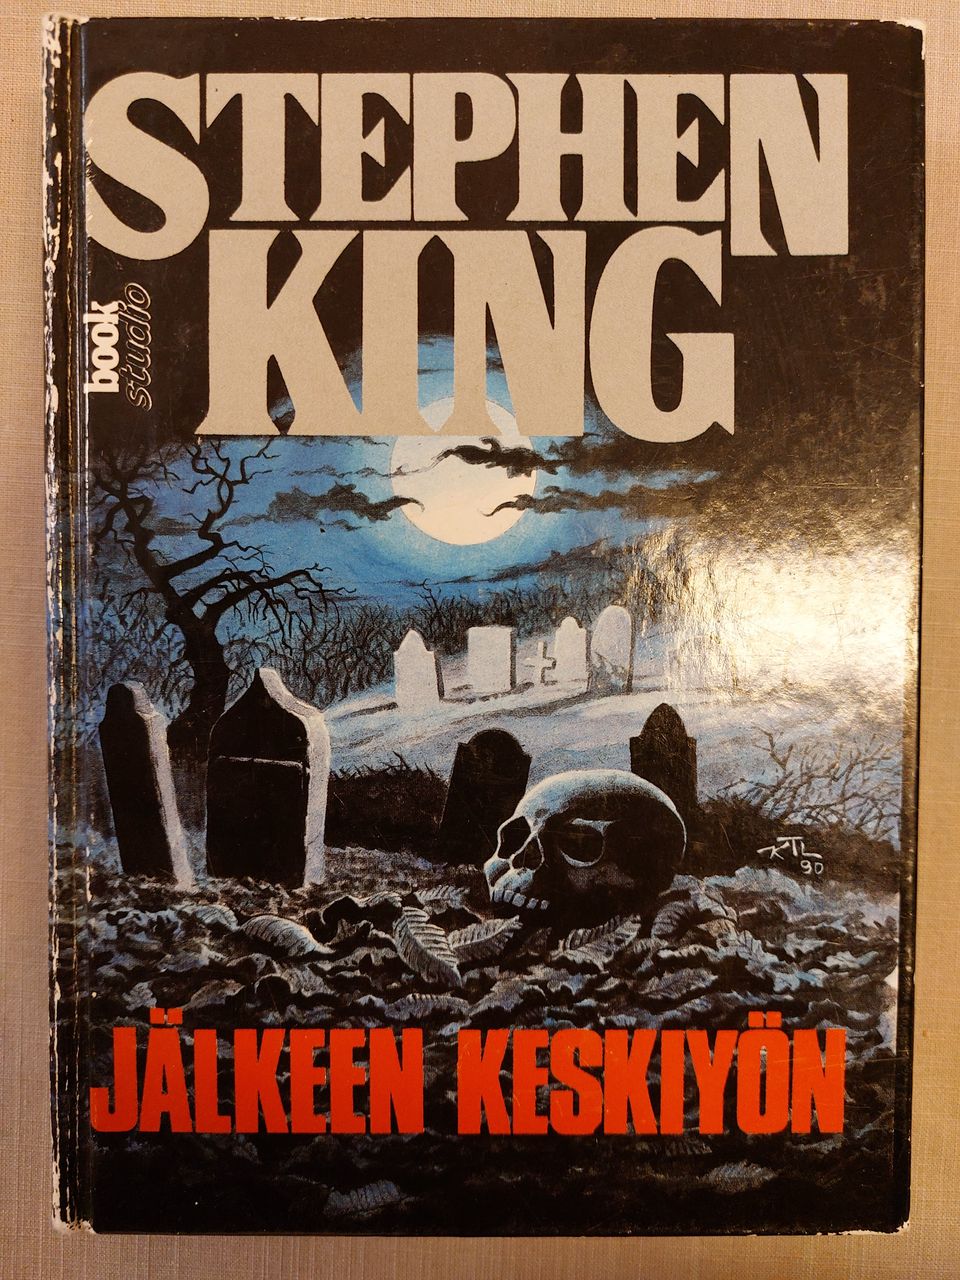 Stephen King - Jälkeen keskiyön, 1. painos, Imatra/posti